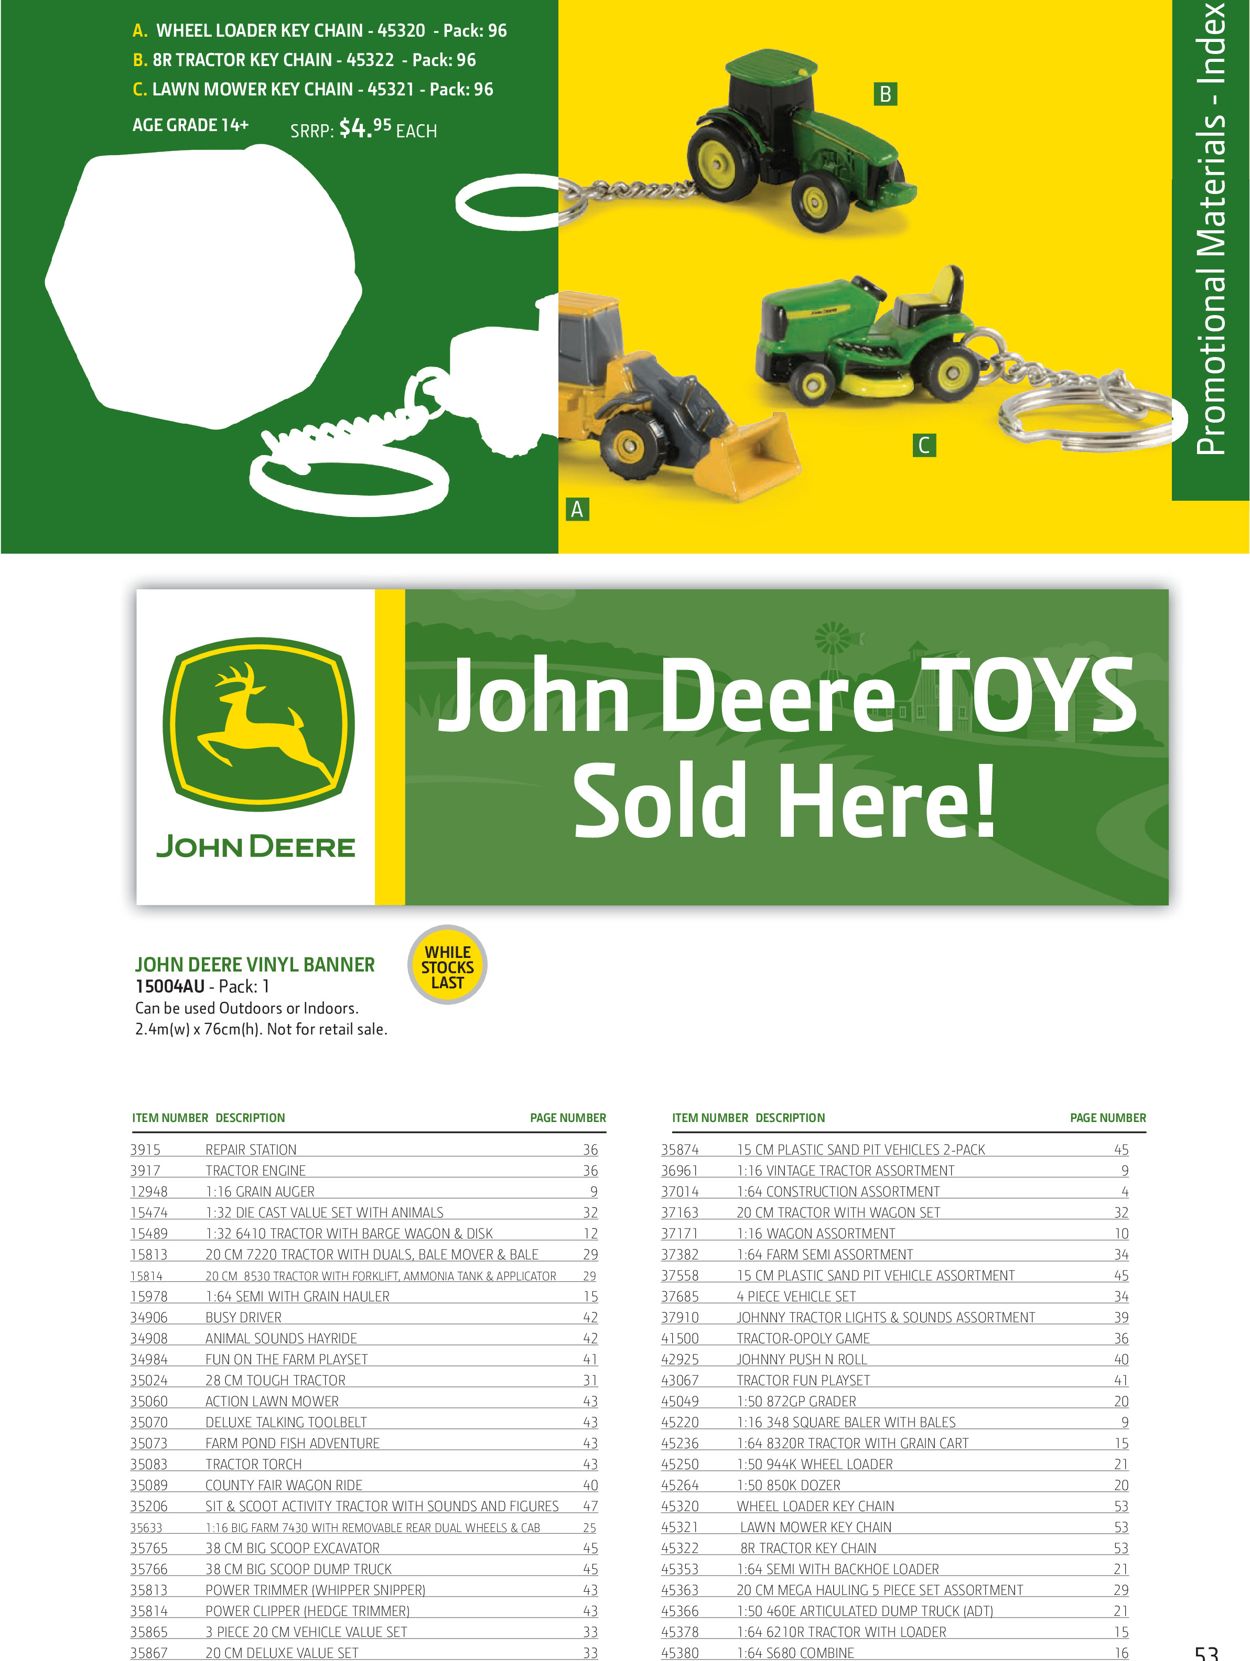 John Deere Catalogue from 01/02/2020